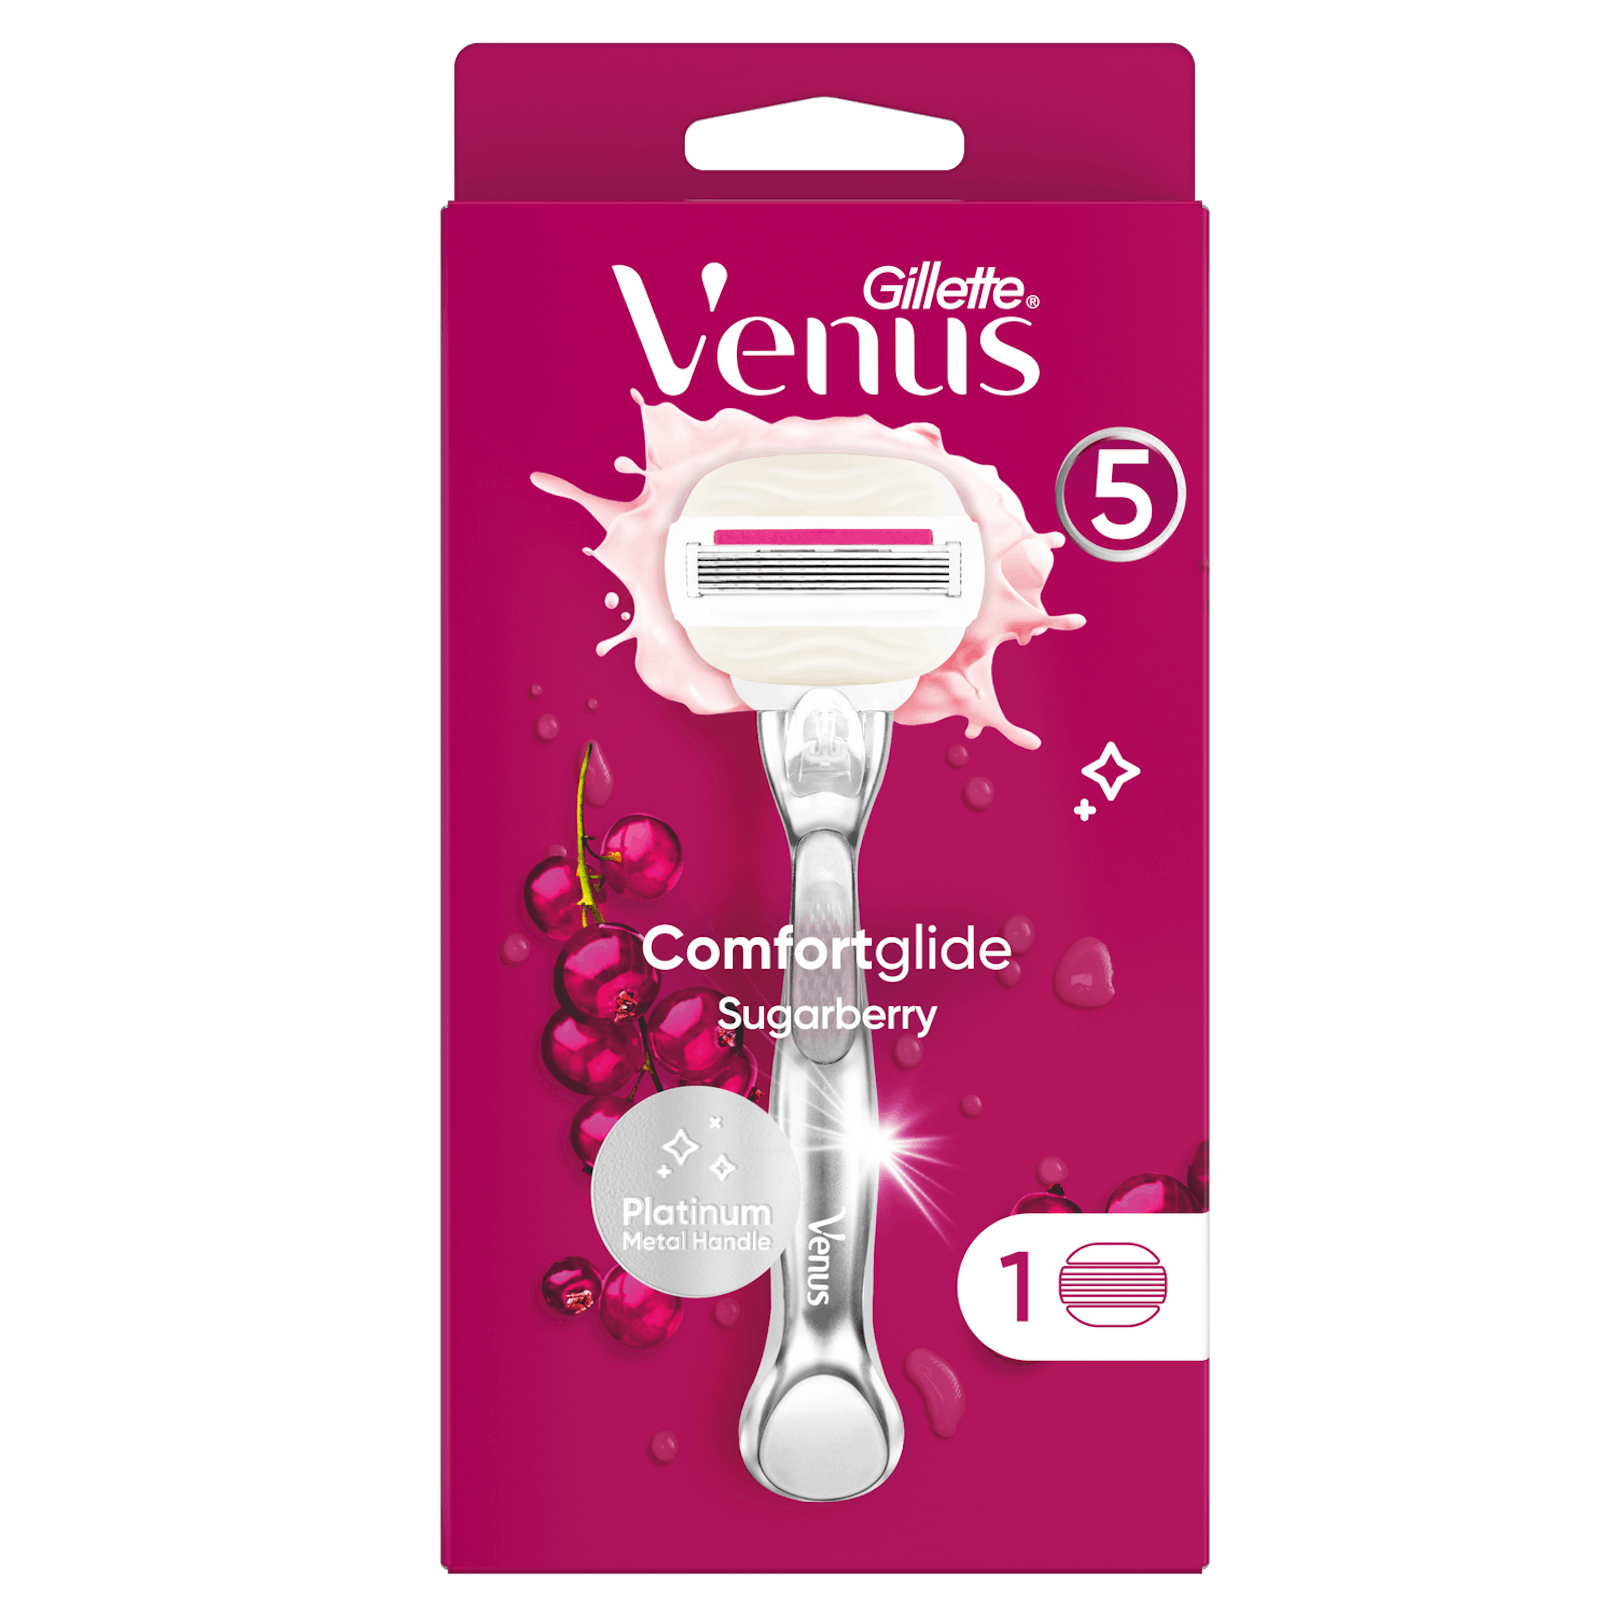 Gillette Venus Comfortglide Sugarberry: Mit flexiblen Gelkissen für eine angenehme Rasur